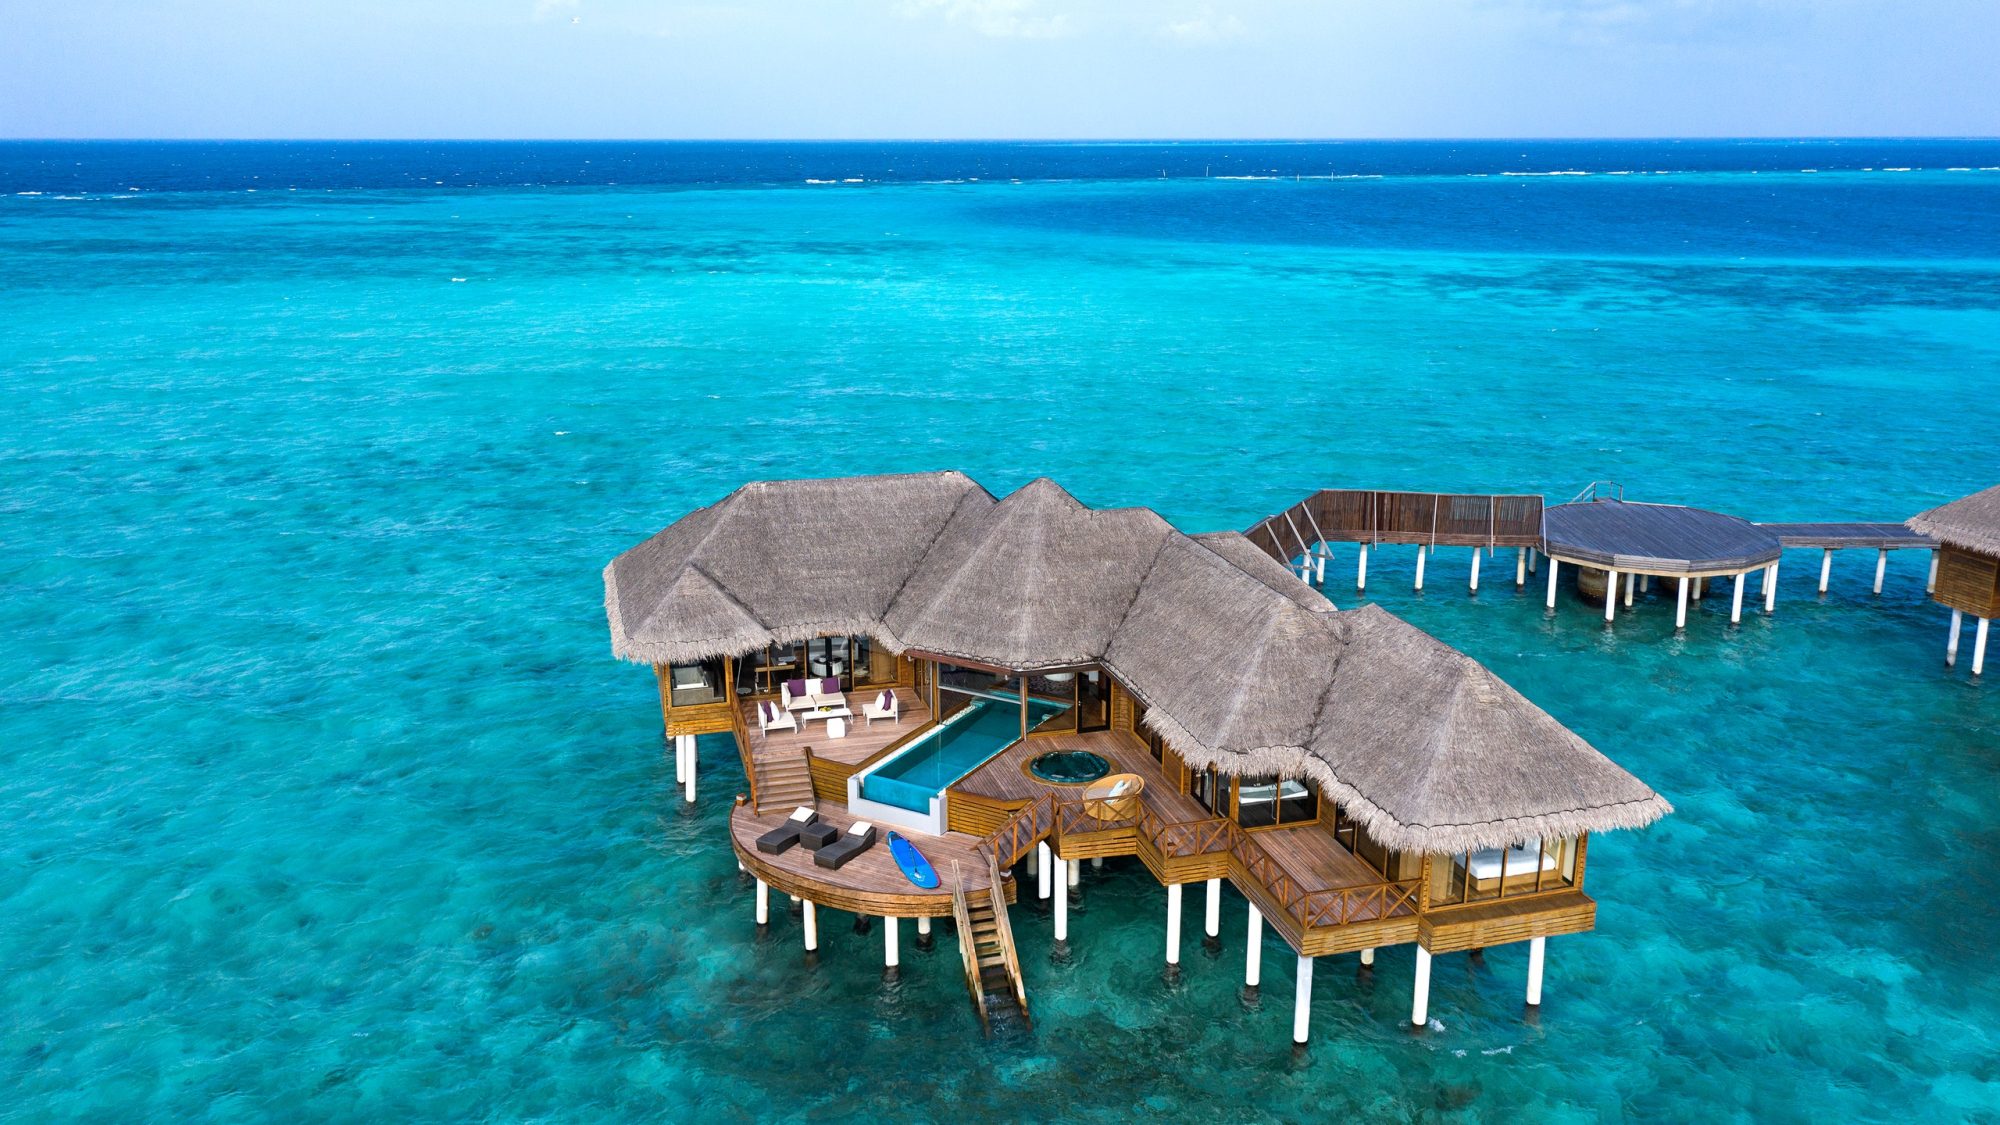 Bask in tropical splendor at the Huvafen Fushi Resort in Maldives